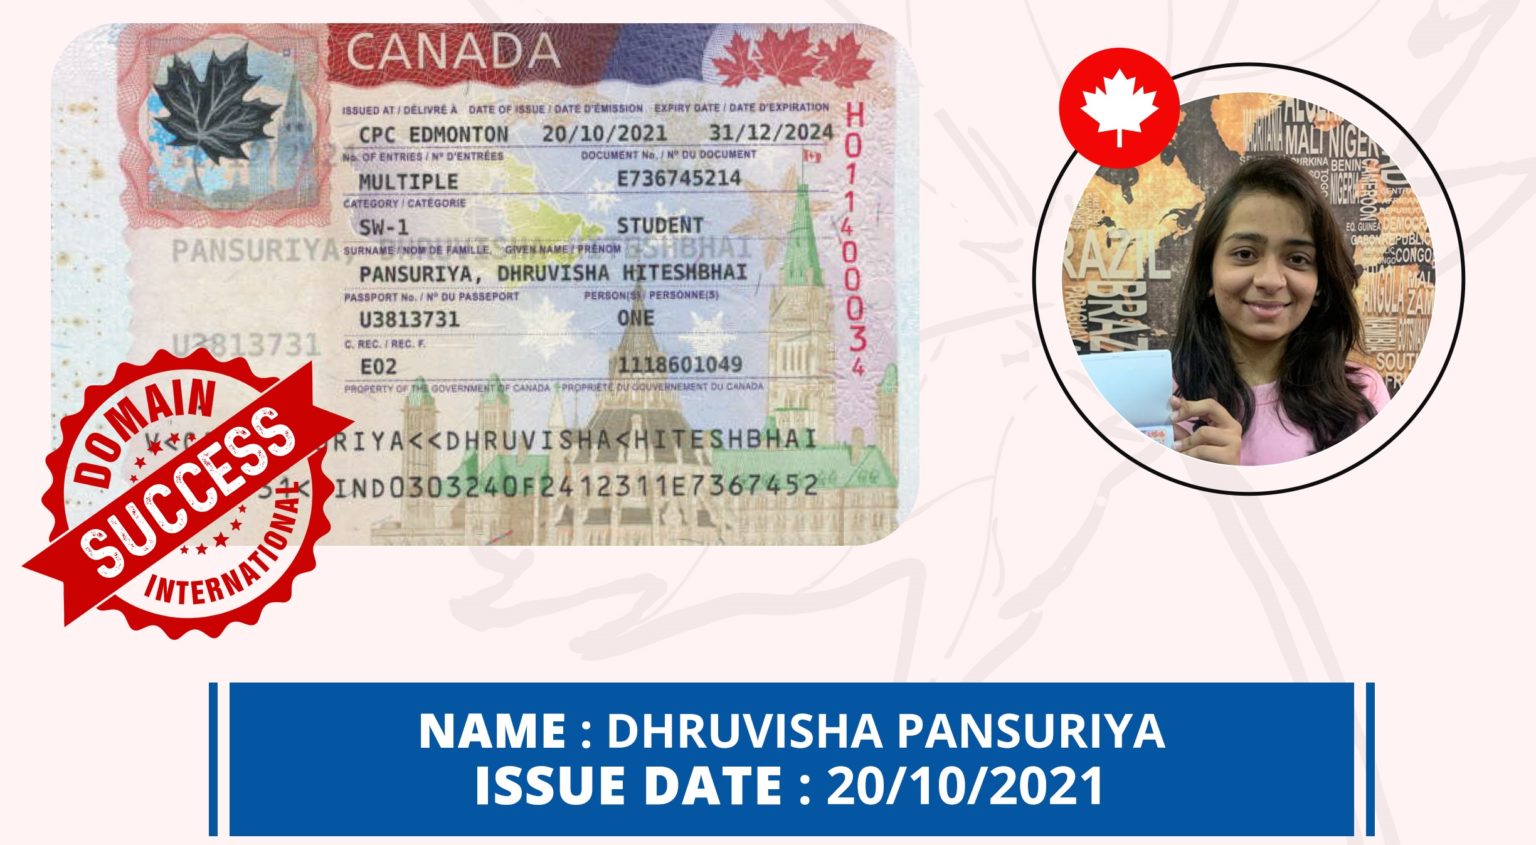 Canada-Visa-14-1536x845